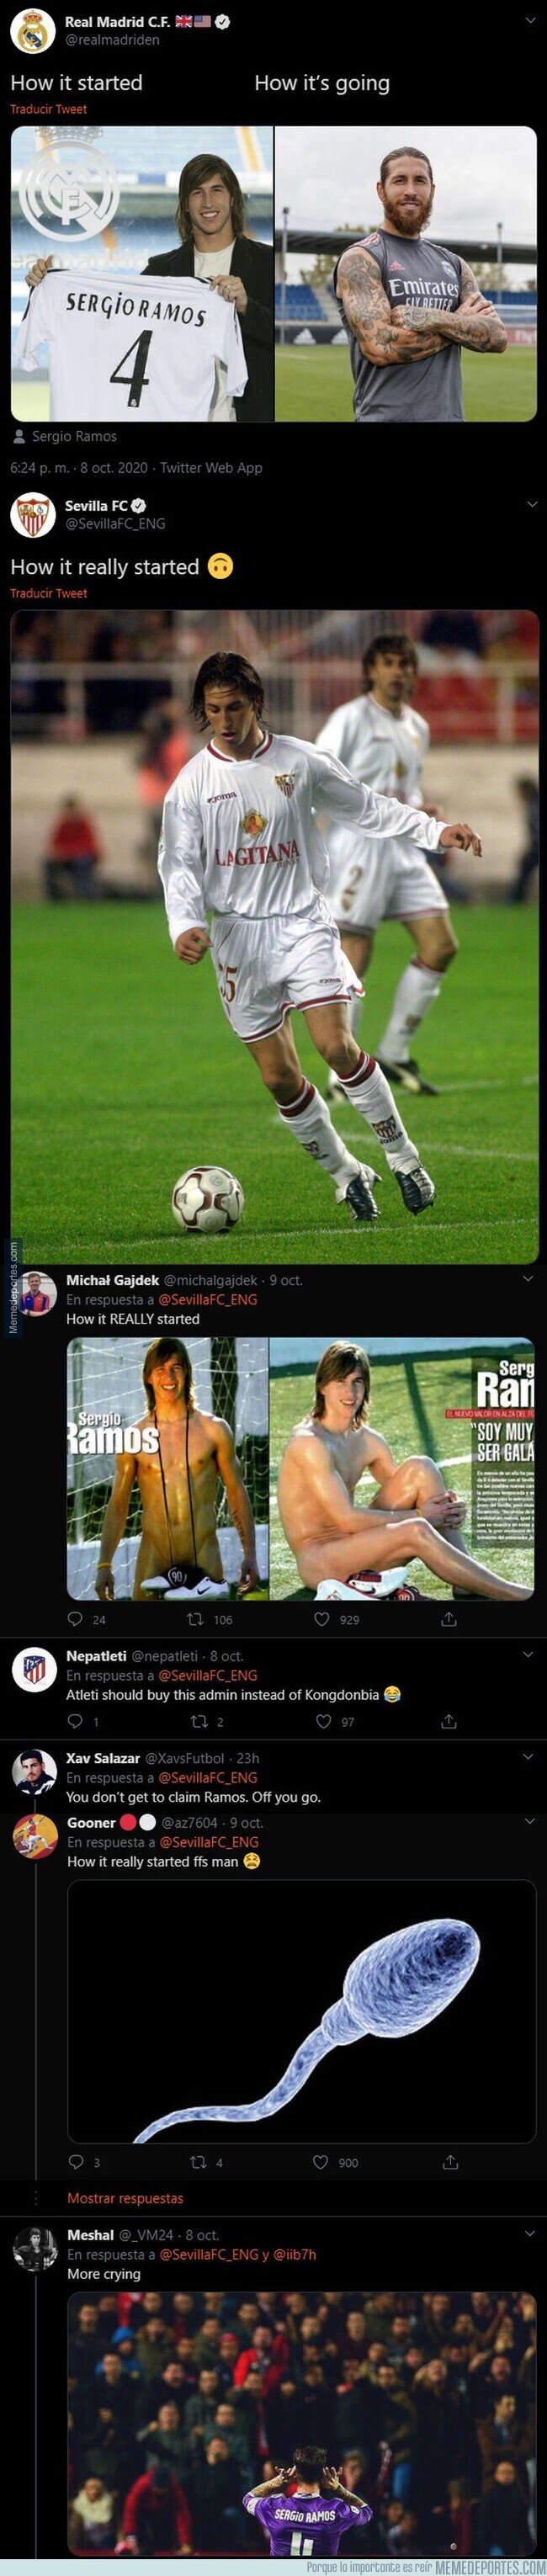 1117554 - El descomunal ZASCA del Sevilla al Real Madrid en Twitter por como dicen que empezó todo en su carrera